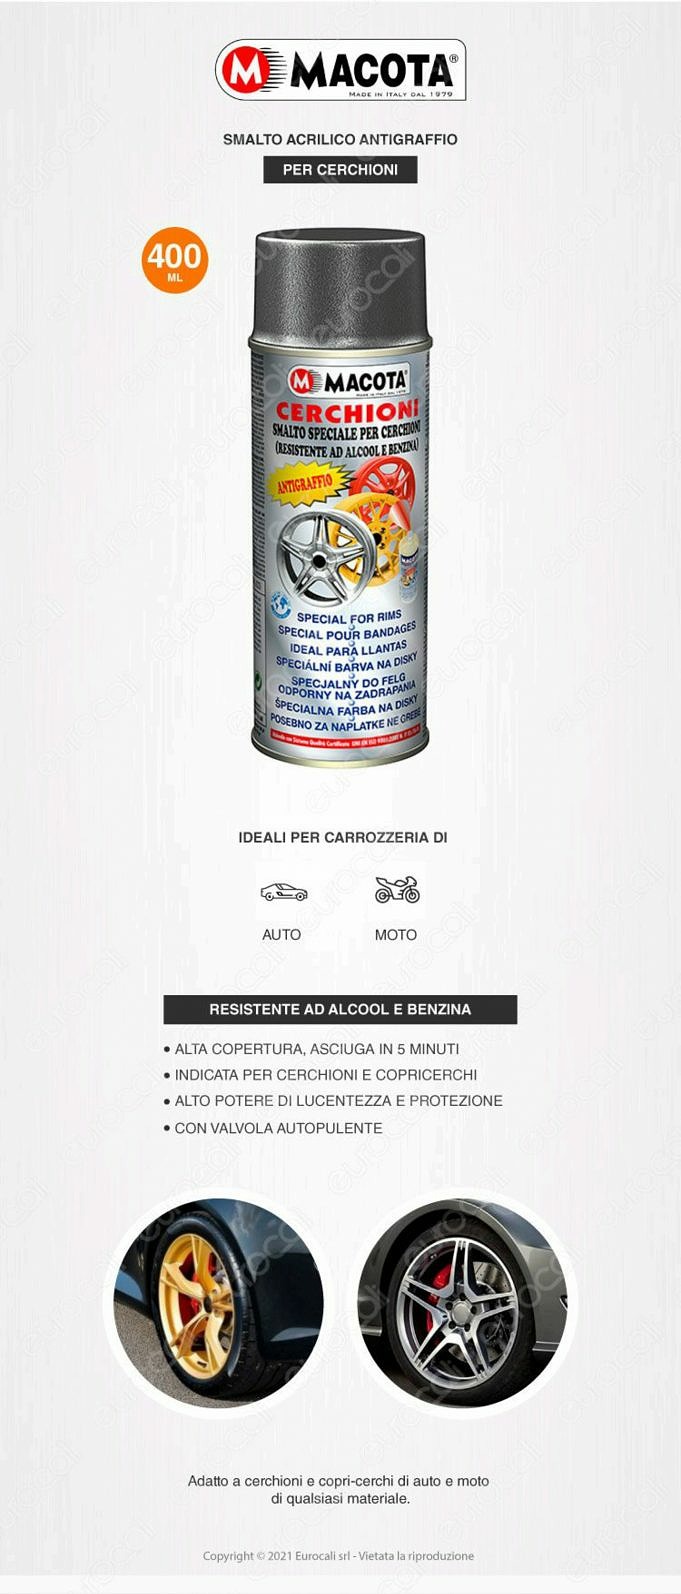 6 Migliori Vernici Spray Per Ruote E Cerchioni